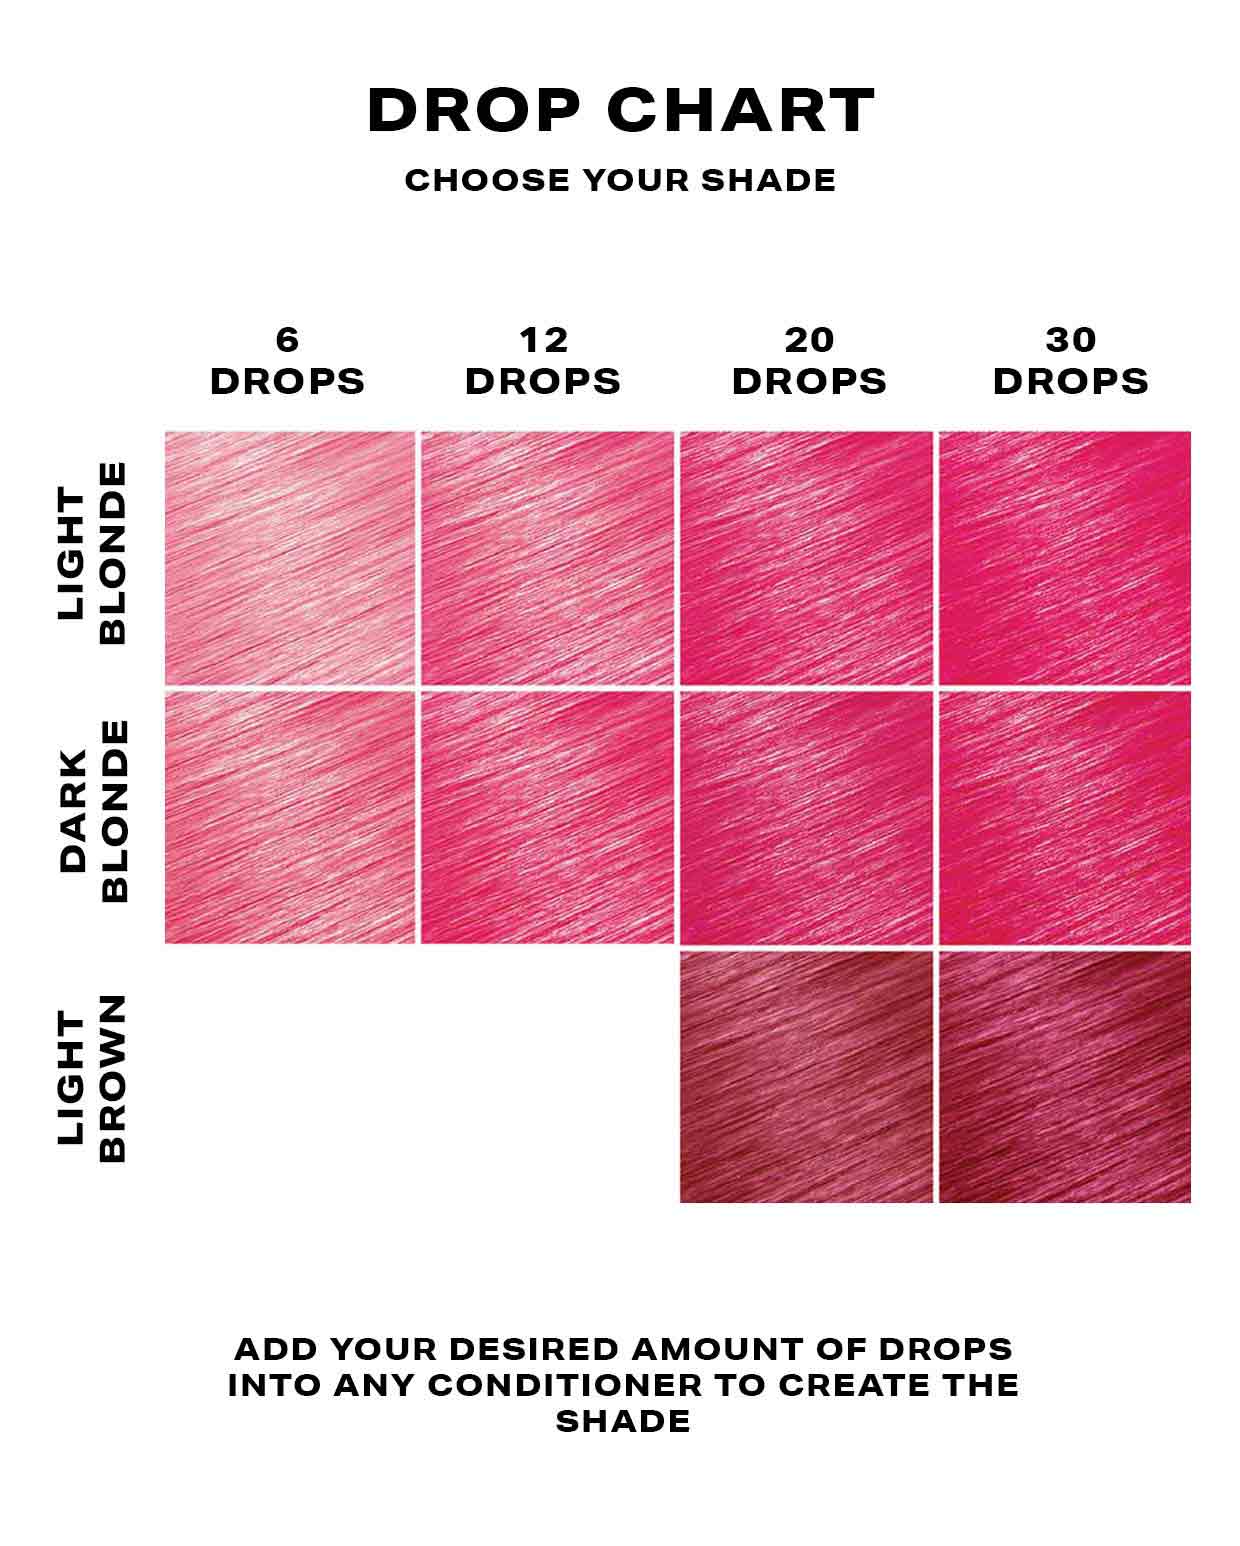 Pink hair dye DROP IT chart